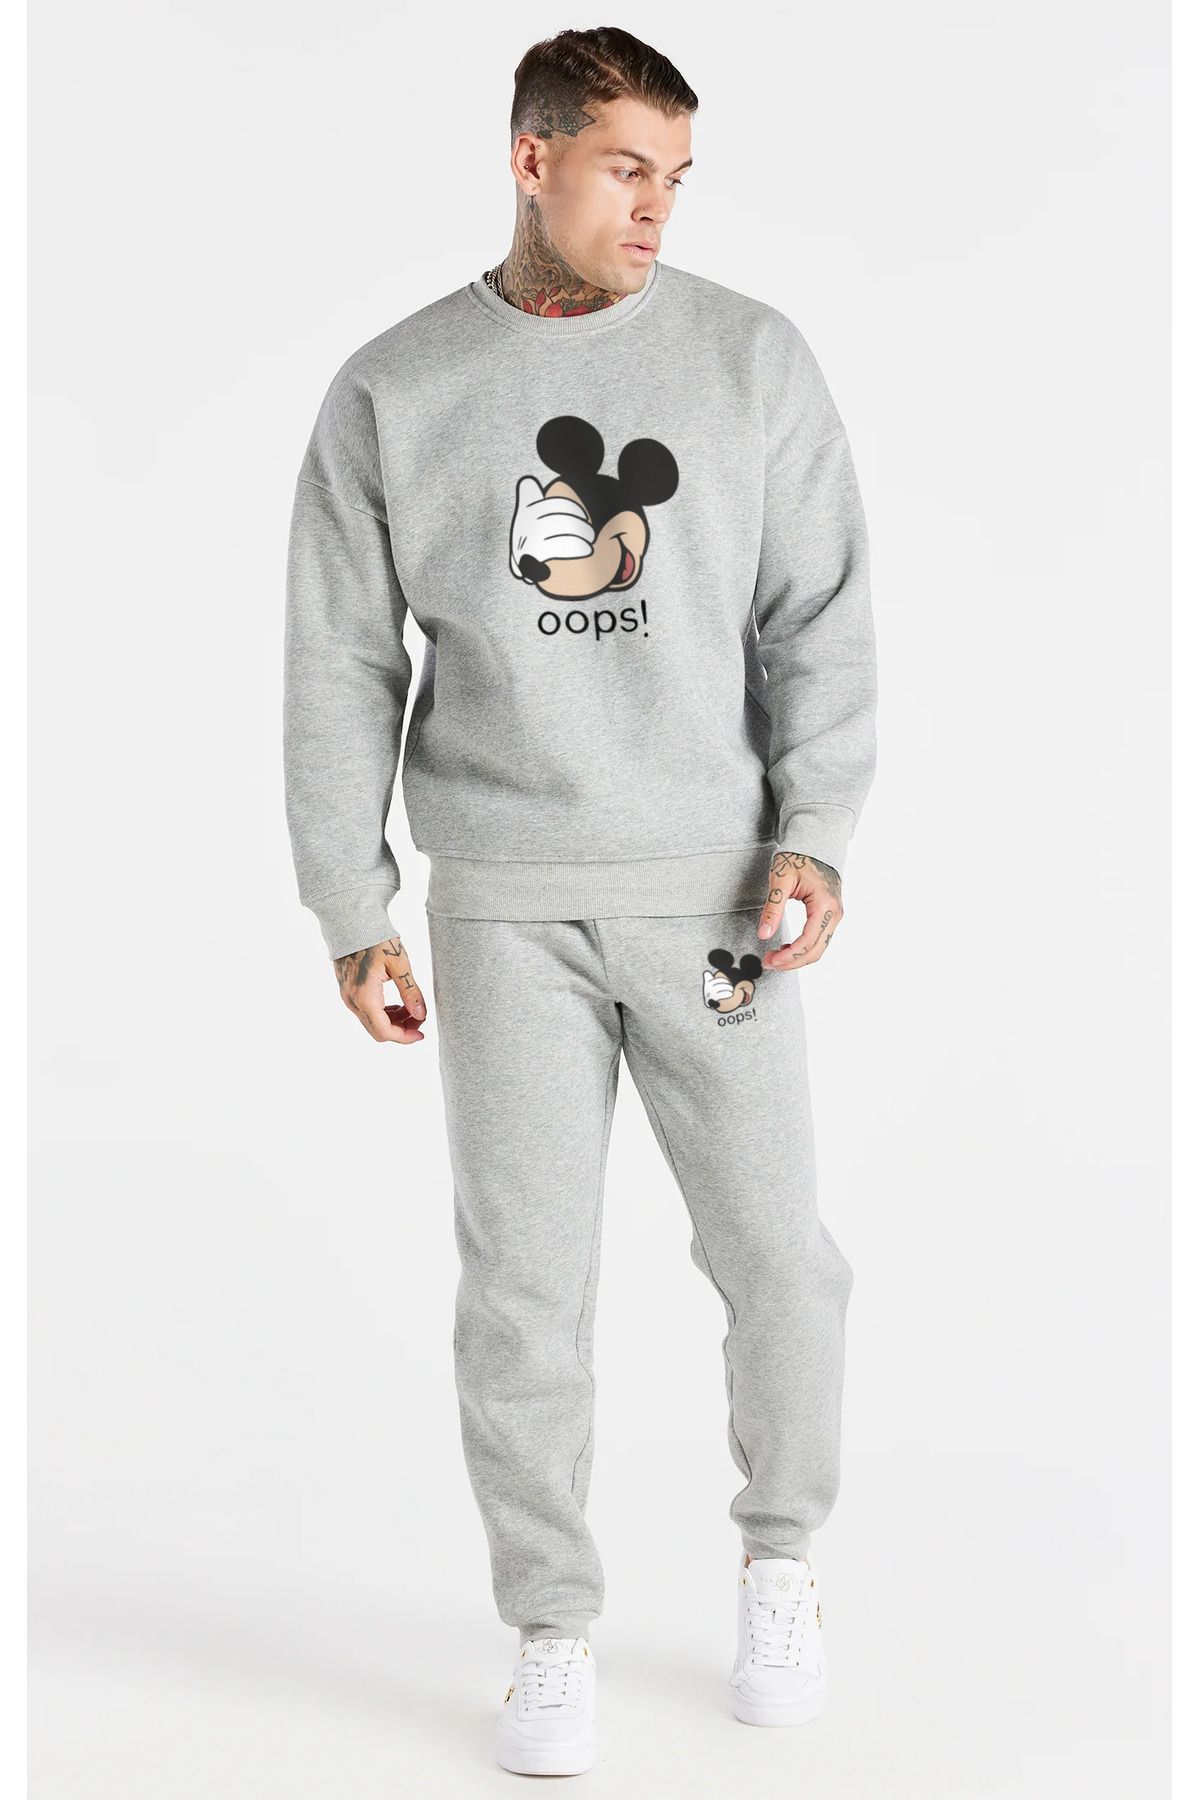 Everest Fashion Erkek Mickey Mouse Baskılı Eşofman Sweatshirt Alt-Üst Takım